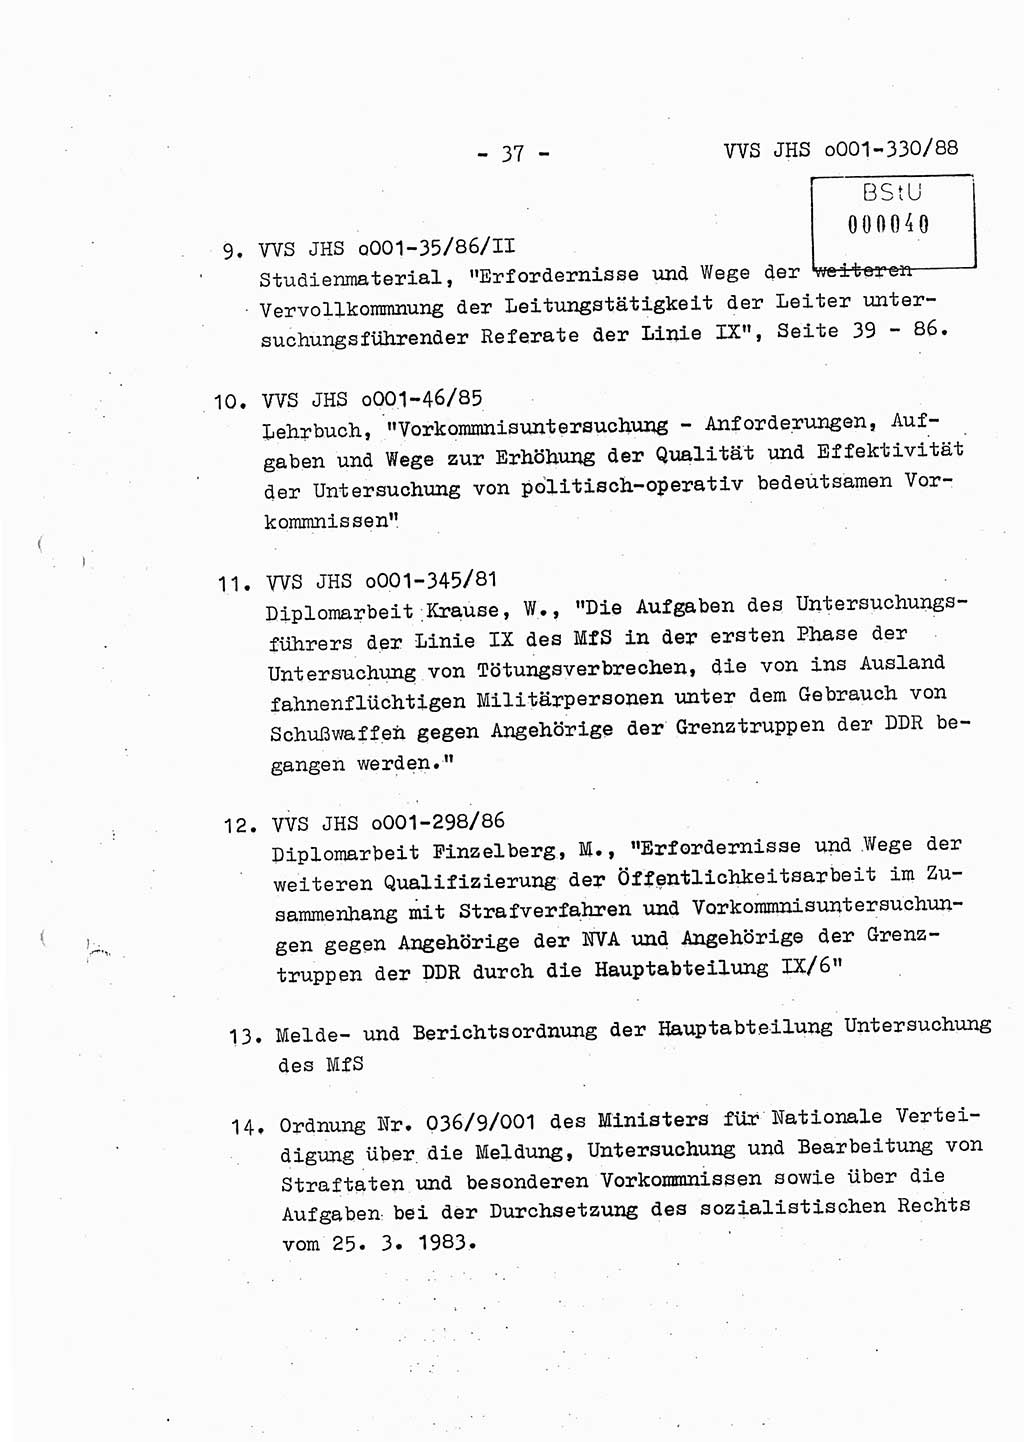 Diplomarbeit Offiziersschüler Thomas Mühle (HA Ⅸ/6), Ministerium für Staatssicherheit (MfS) [Deutsche Demokratische Republik (DDR)], Juristische Hochschule (JHS), Vertrauliche Verschlußsache (VVS) o001-330/88, Potsdam 1988, Seite 37 (Dipl.-Arb. MfS DDR JHS VVS o001-330/88 1988, S. 37)